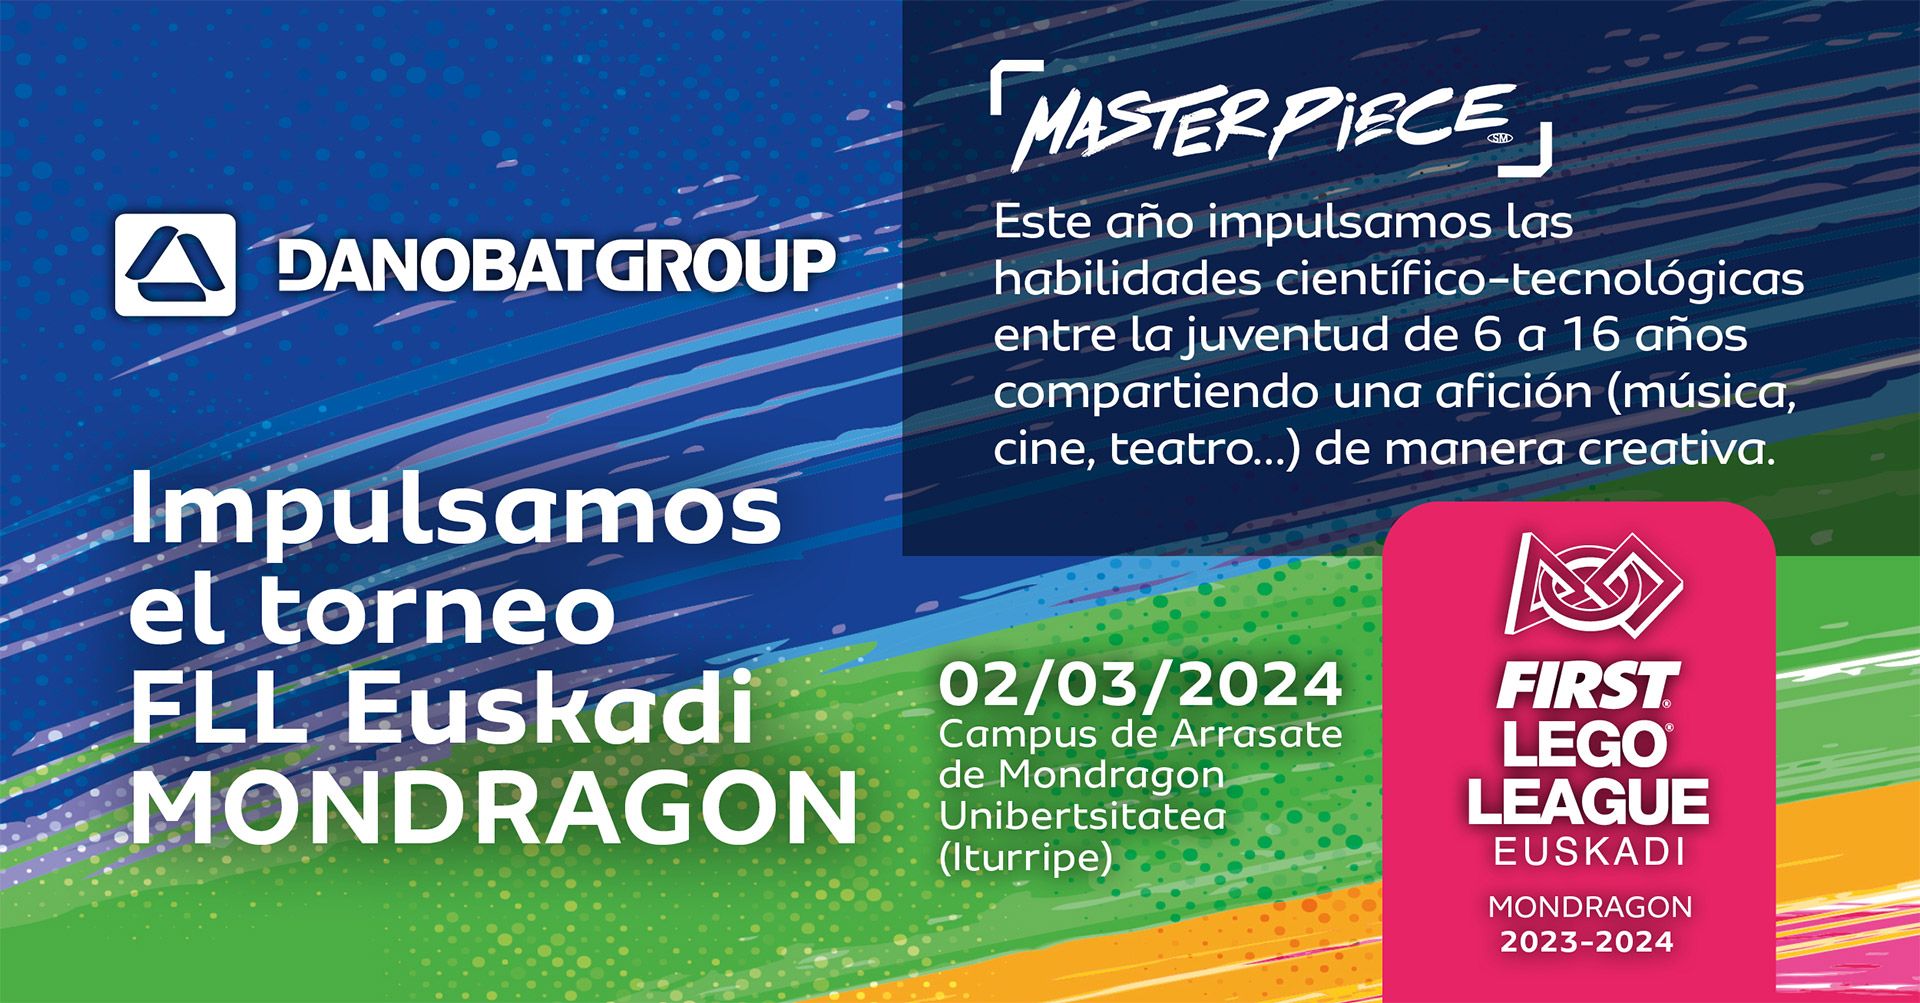 Danobatgroup refuerza su apuesta por incentivar el talento en las áreas STEAM, patrocinando el torneo First Lego League Euskadi-MONDRAGON